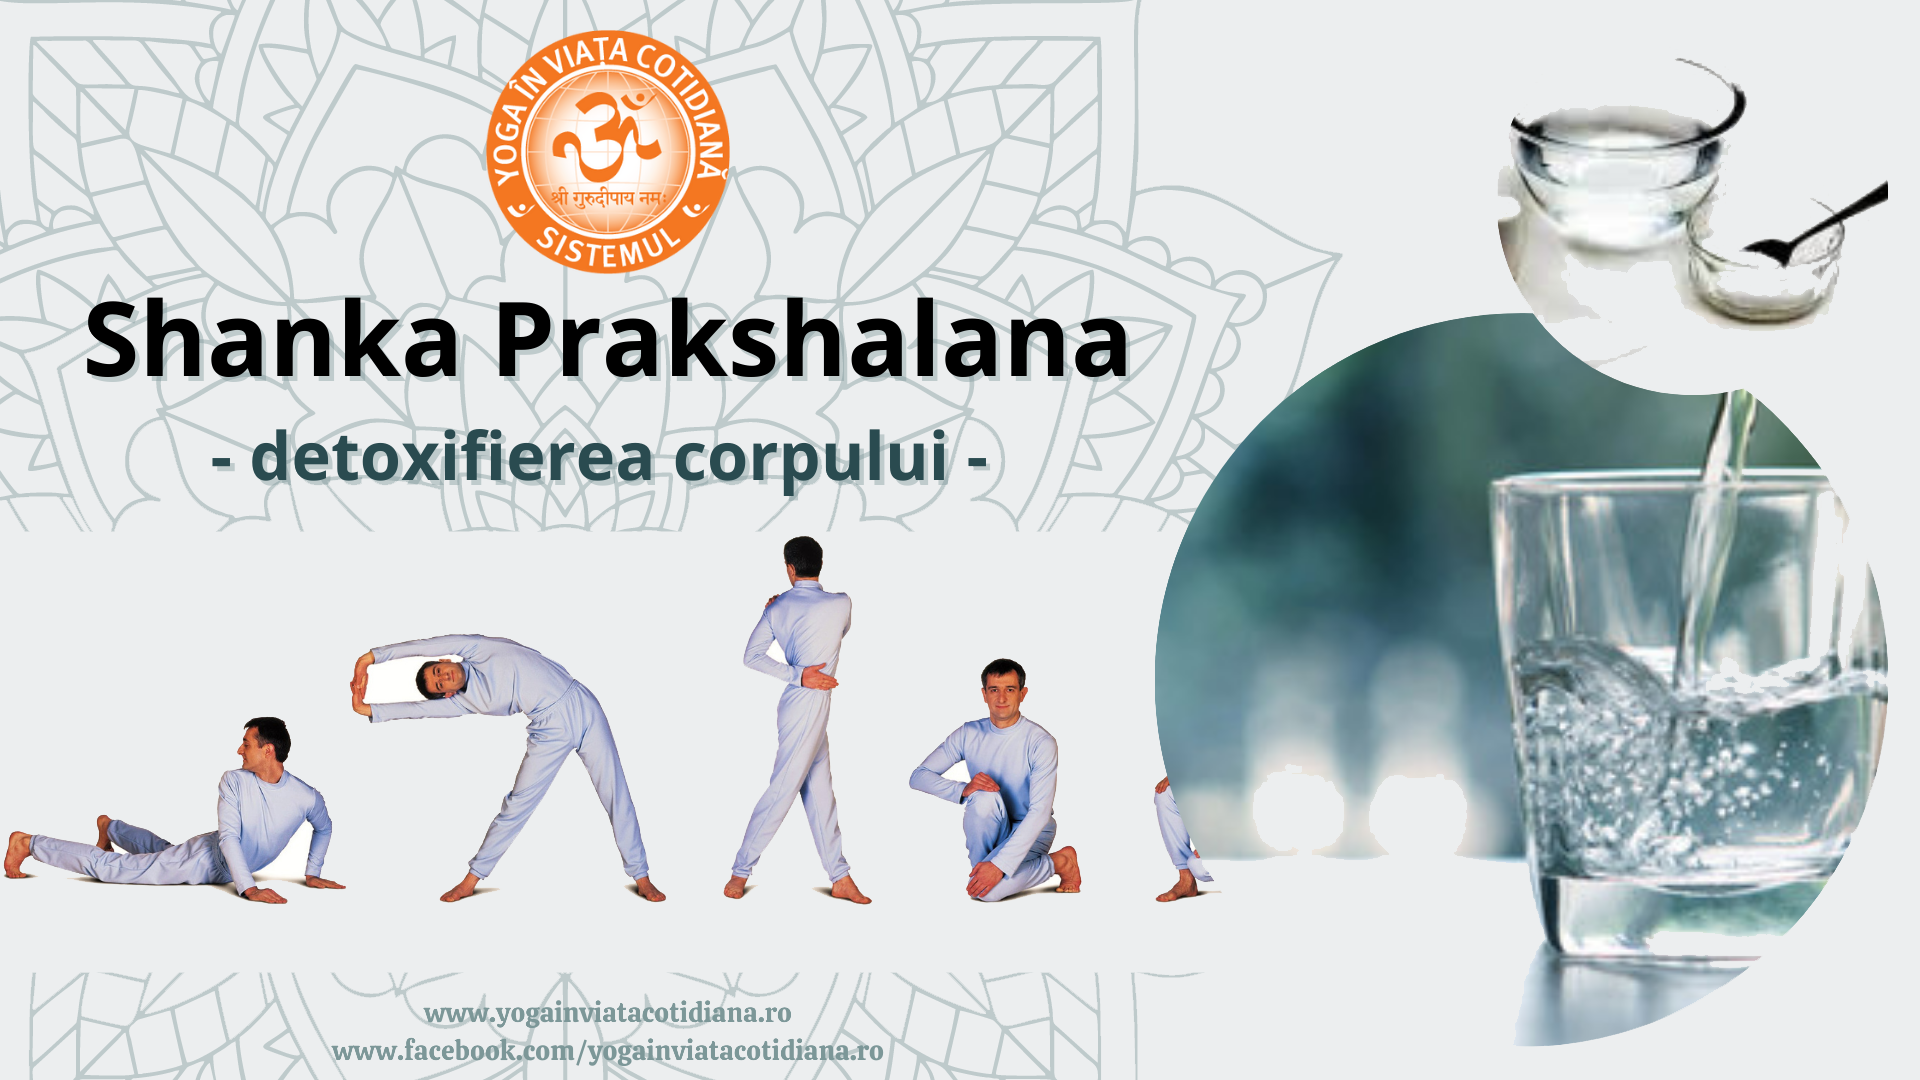 shanka prakshalana eveniment 2